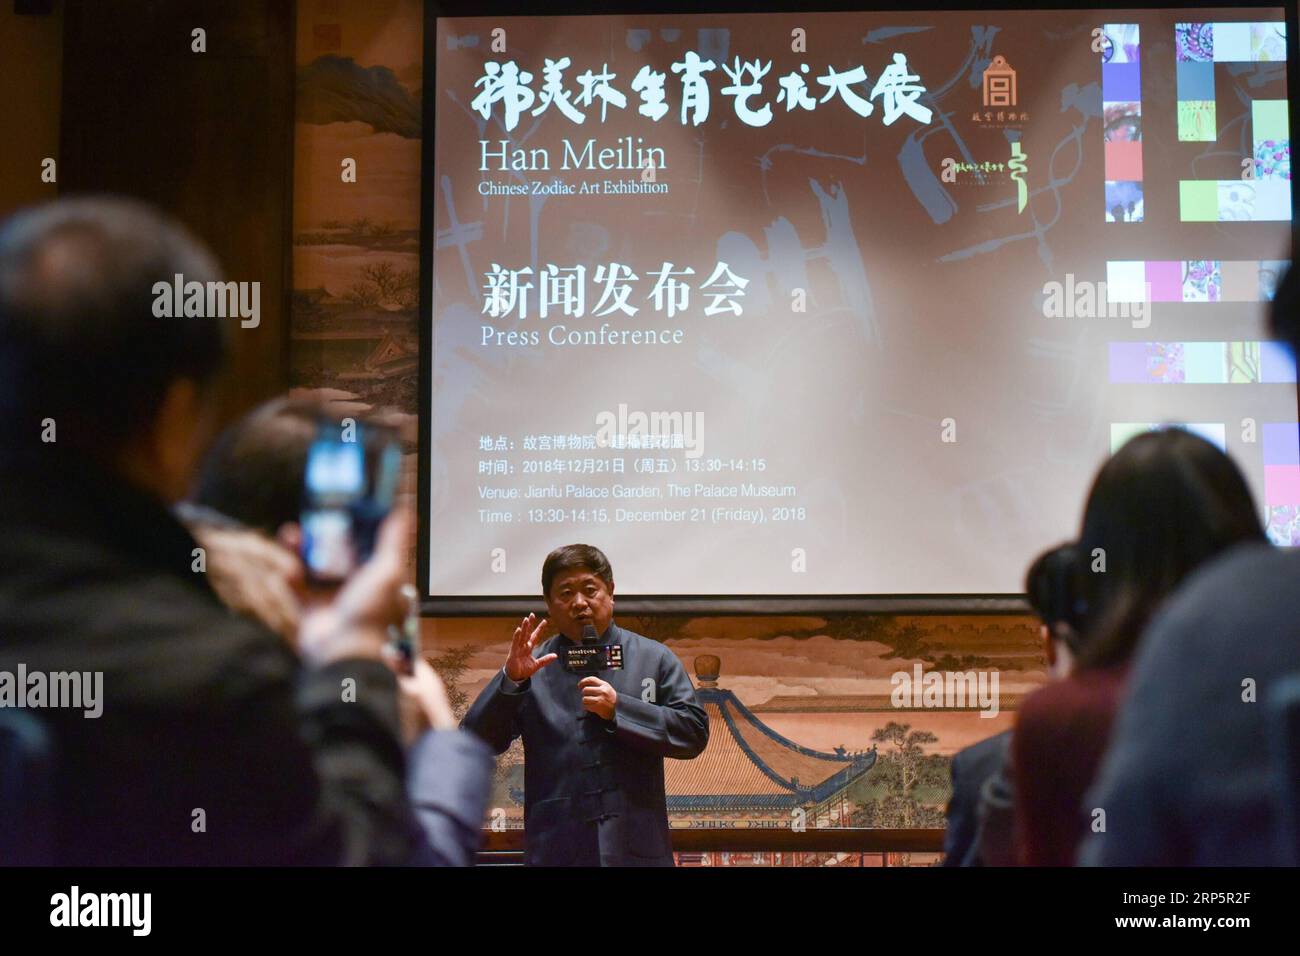 (181221) -- PECHINO, 21 dicembre 2018 (Xinhua) -- Shan Jixiang (C), curatore del Museo del Palazzo, parla in una conferenza stampa sulla mostra d'arte cinese dello zodiaco Han Meilin al Museo del Palazzo di Pechino, capitale della Cina, 21 dicembre 2018. La mostra d'arte cinese dello zodiaco, che espone opere d'arte del pittore, scultore e designer cinese Han Meilin, è prevista per il 5 gennaio 2019. (Xinhua/li Mangmang) (InPalaceMuseum) CHINA-BEIJING-PALACE MUSEUM-HAN MEILIN CHINESE ZODIAC ART EXHIBITION (CN) PUBLICATIONxNOTxINxCHN Foto Stock